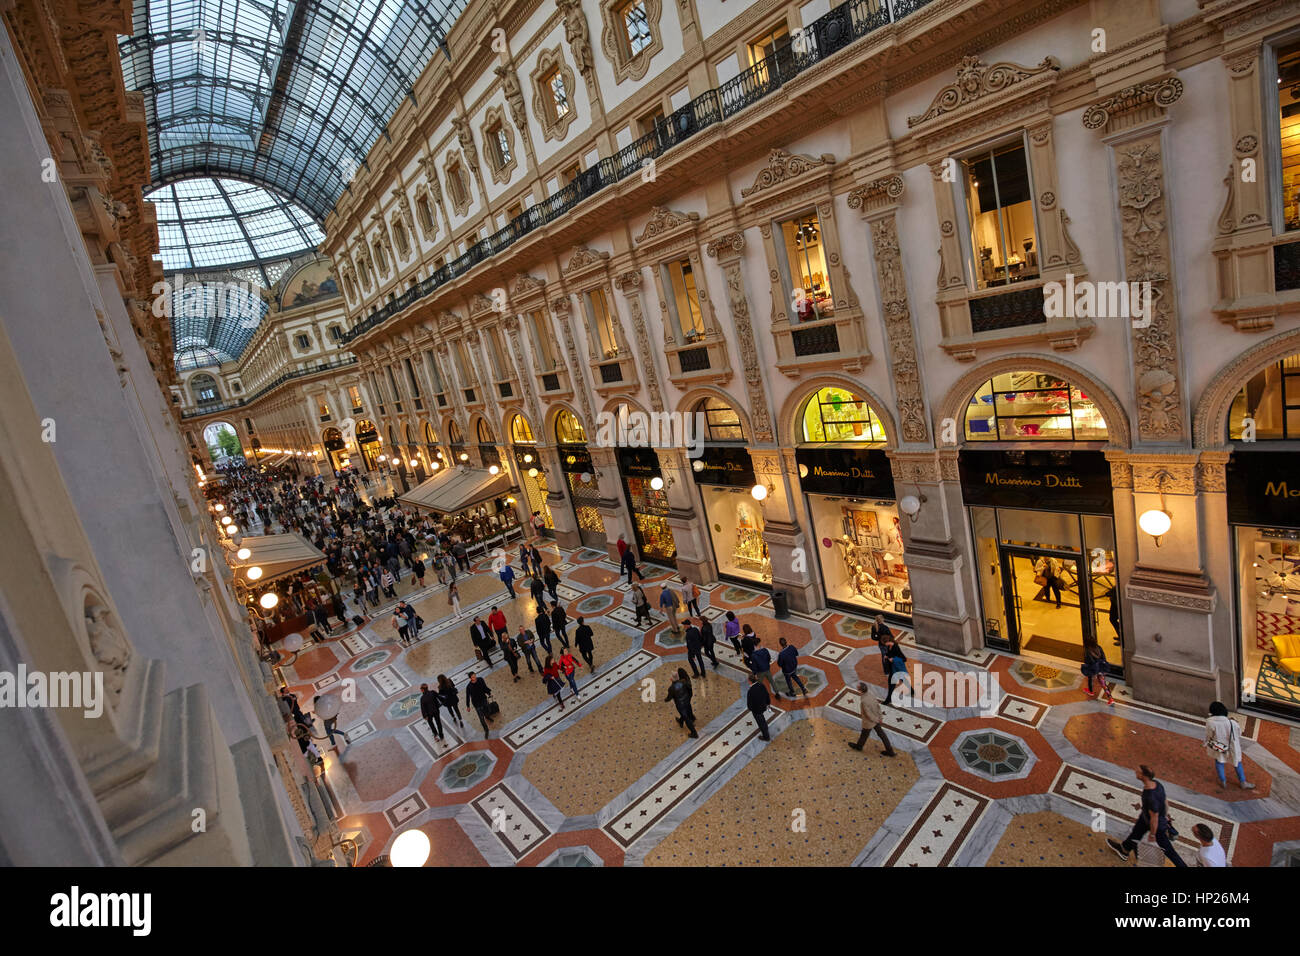 Galleria Vittorio Emanuele in Milan, Italy Stock Photo